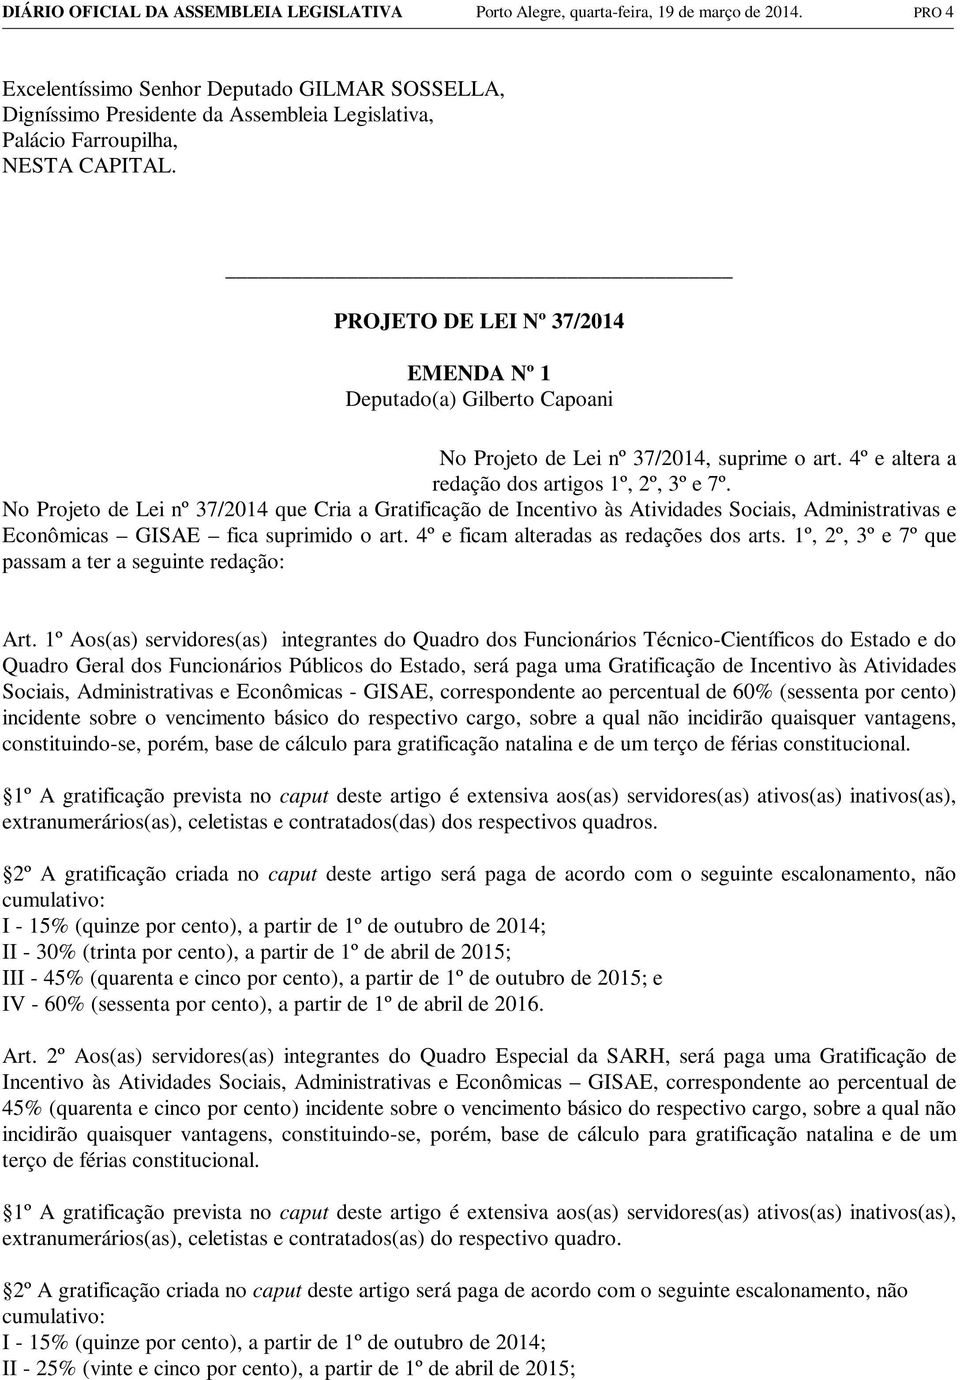 EMENDA Nº 1 Deputado(a) Gilberto Capoani No Projeto de Lei nº 37/2014, suprime o art. 4º e altera a redação dos artigos 1º, 2º, 3º e 7º.